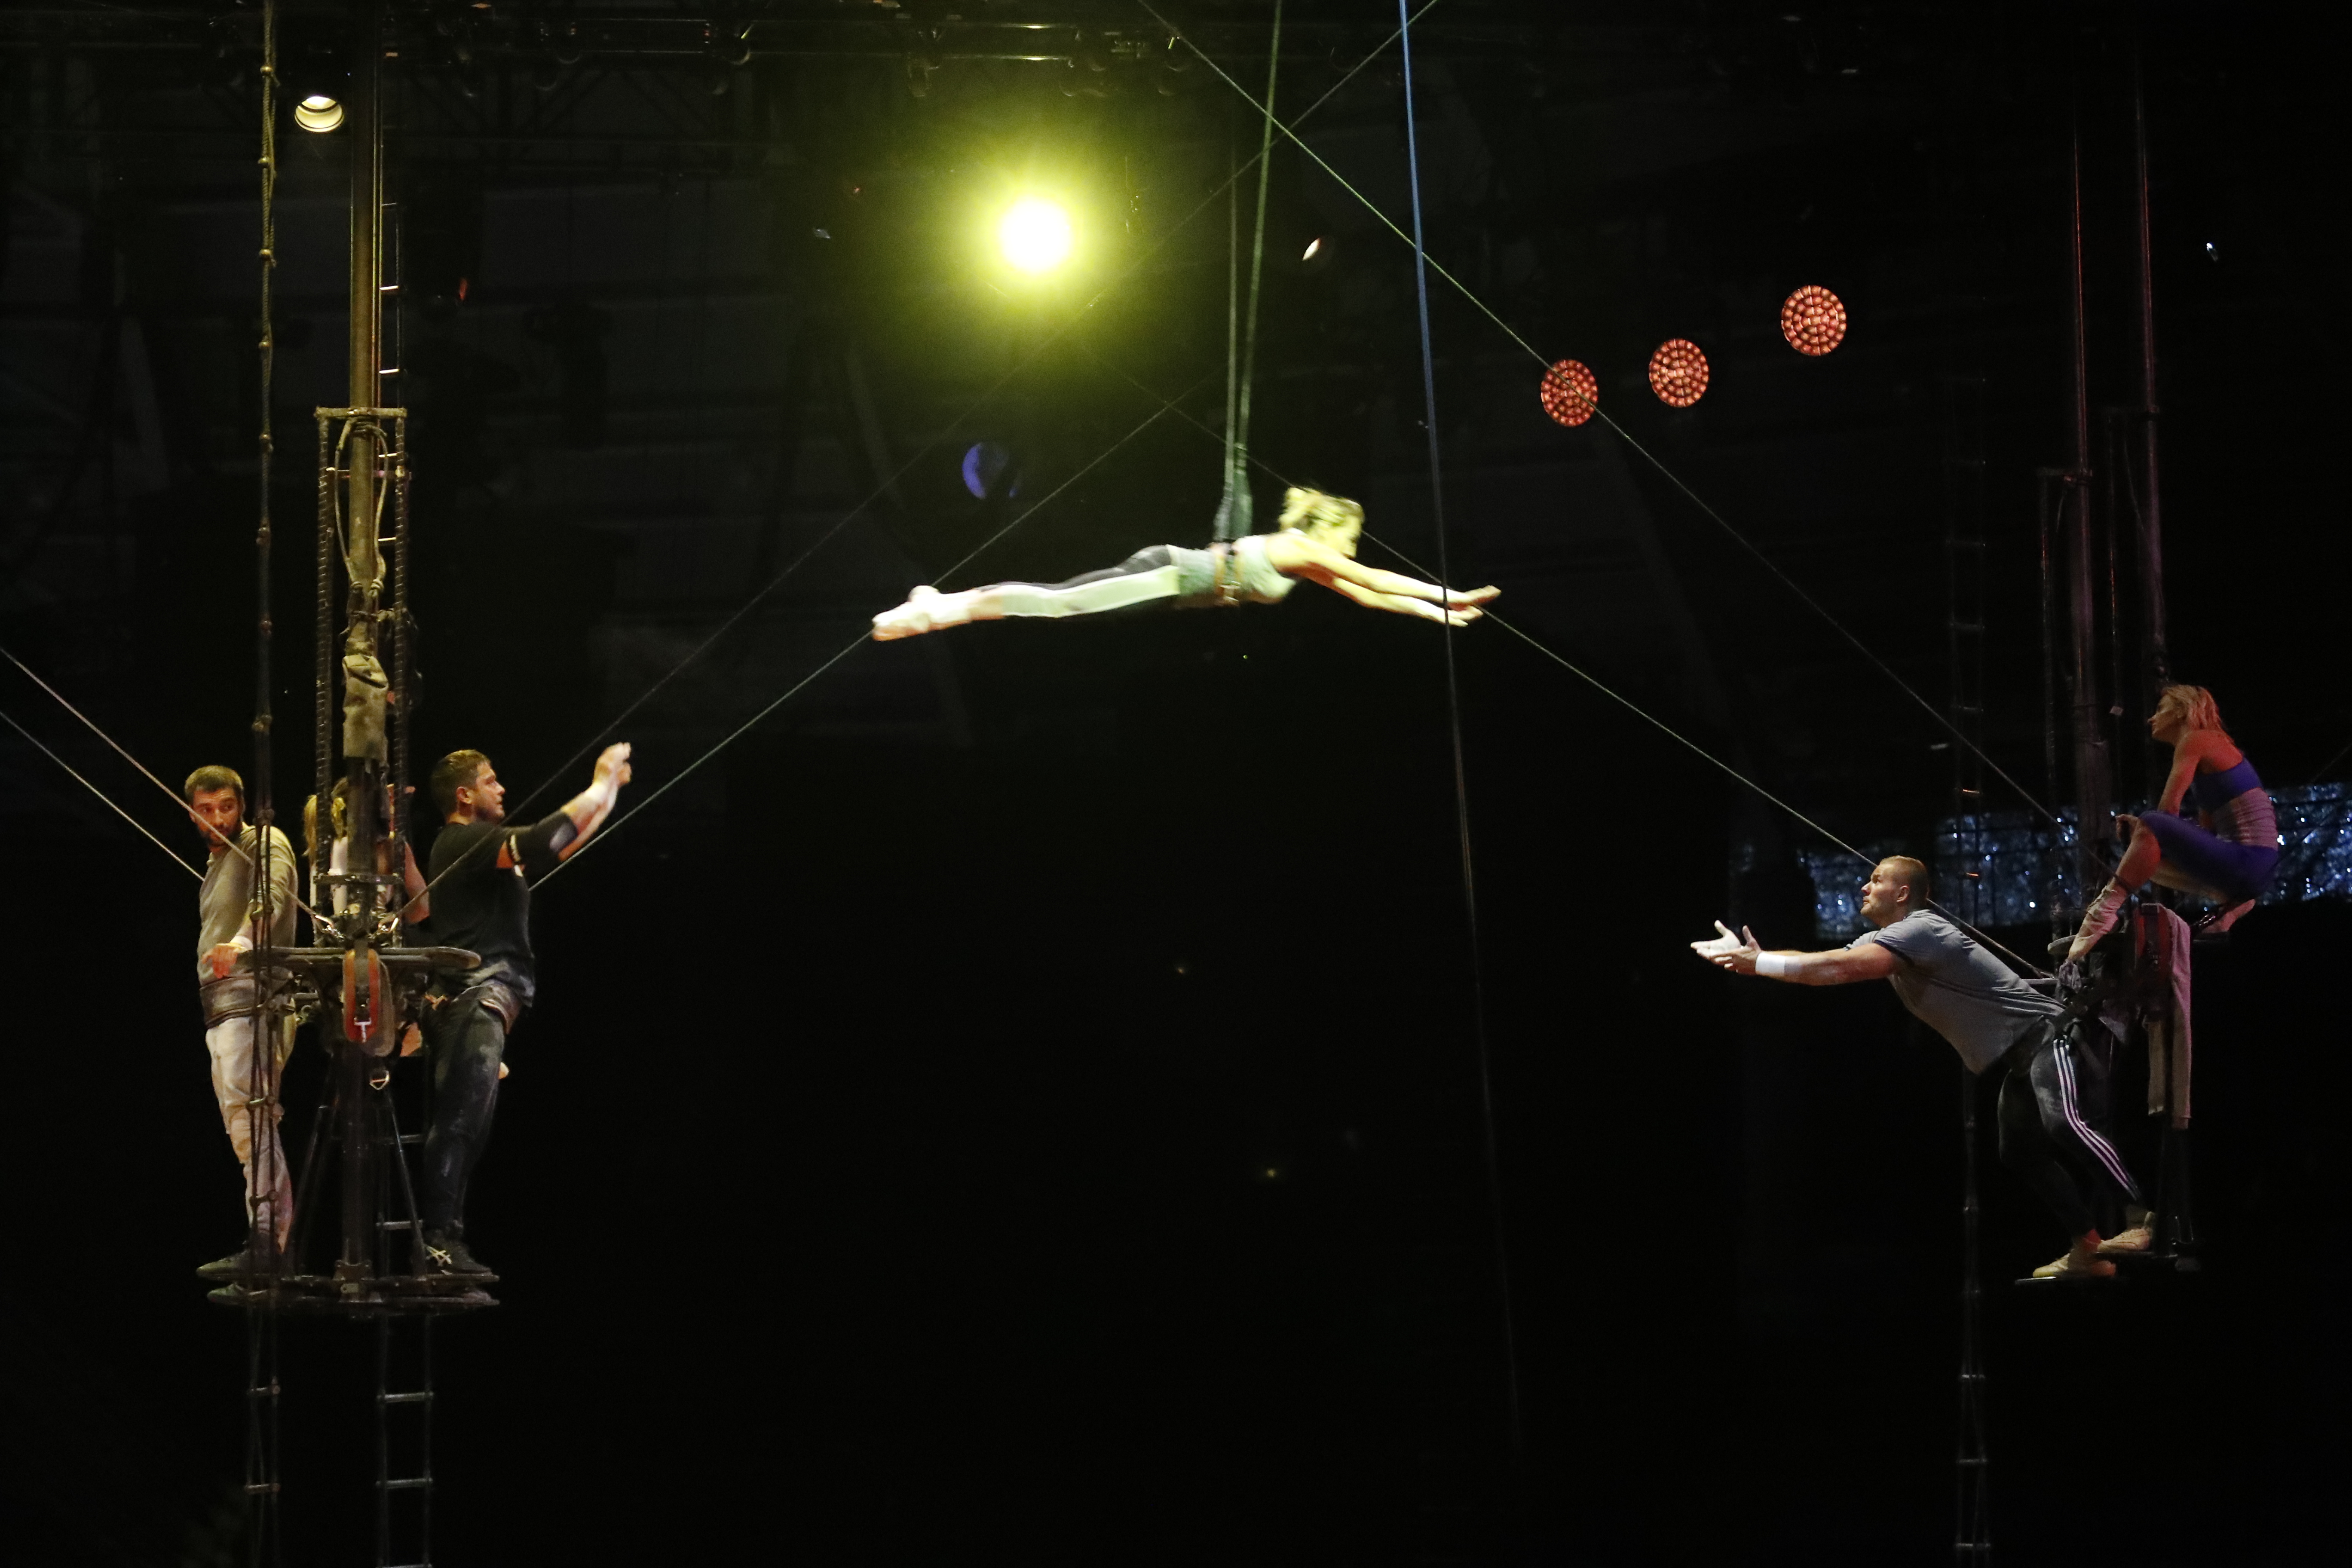 Un equipo de cien personas del Cirque du Soleil vino a Guatemala para presentar la historia sobre una comunidad de insectos que recibe a un nuevo integrante. (Foto Prensa Libre: Esbin Garcia)